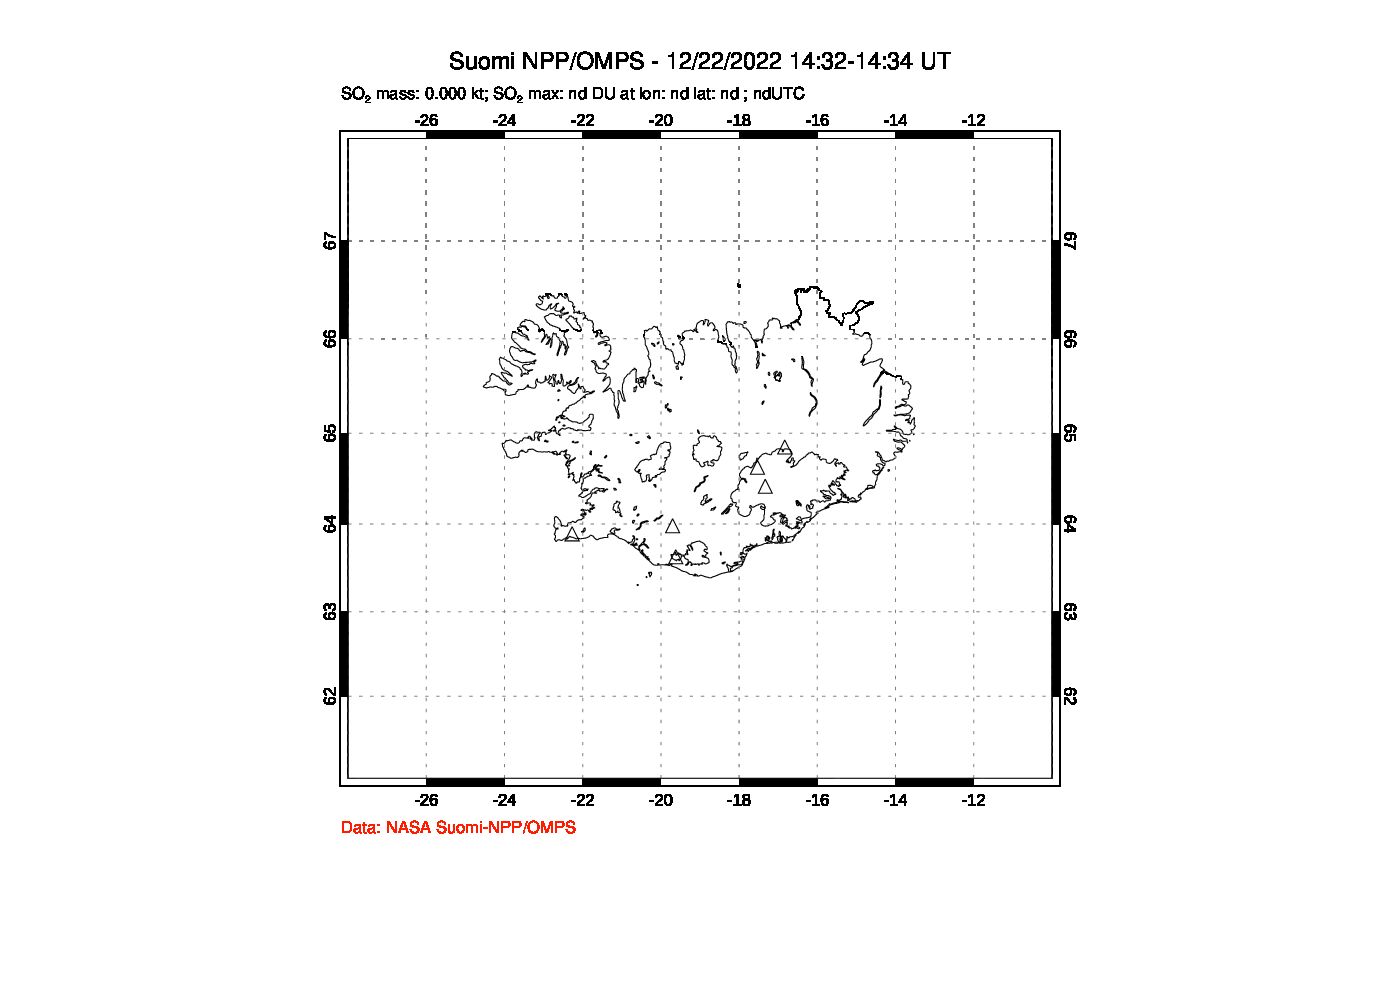 A sulfur dioxide image over Iceland on Dec 22, 2022.